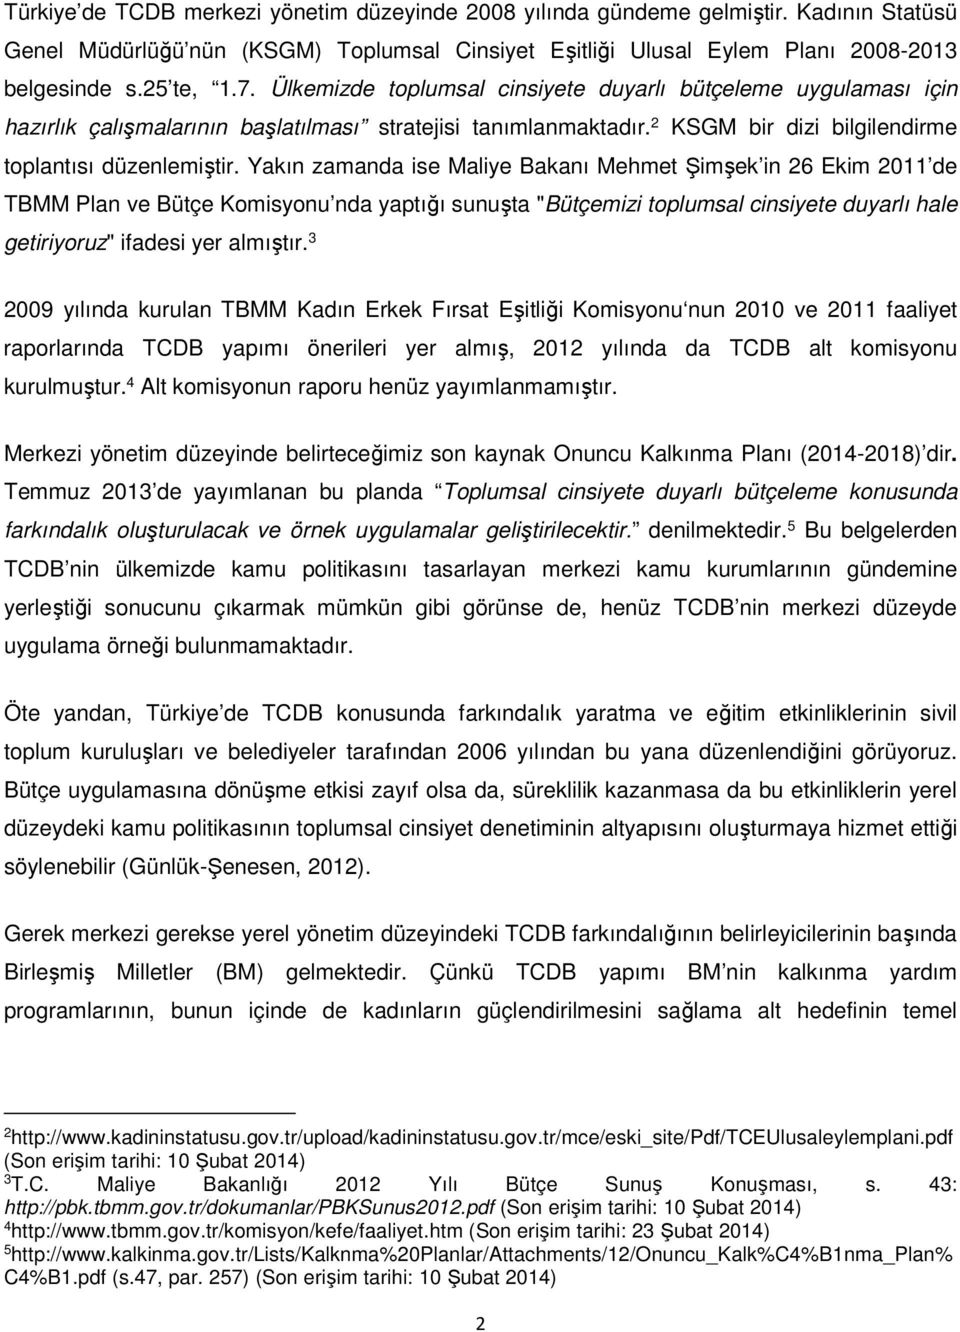 Yakın zamanda ise Maliye Bakanı Mehmet Şimşek in 26 Ekim 2011 de TBMM Plan ve Bütçe Komisyonu nda yaptığı sunuşta "Bütçemizi toplumsal cinsiyete duyarlı hale getiriyoruz" ifadesi yer almıştır.